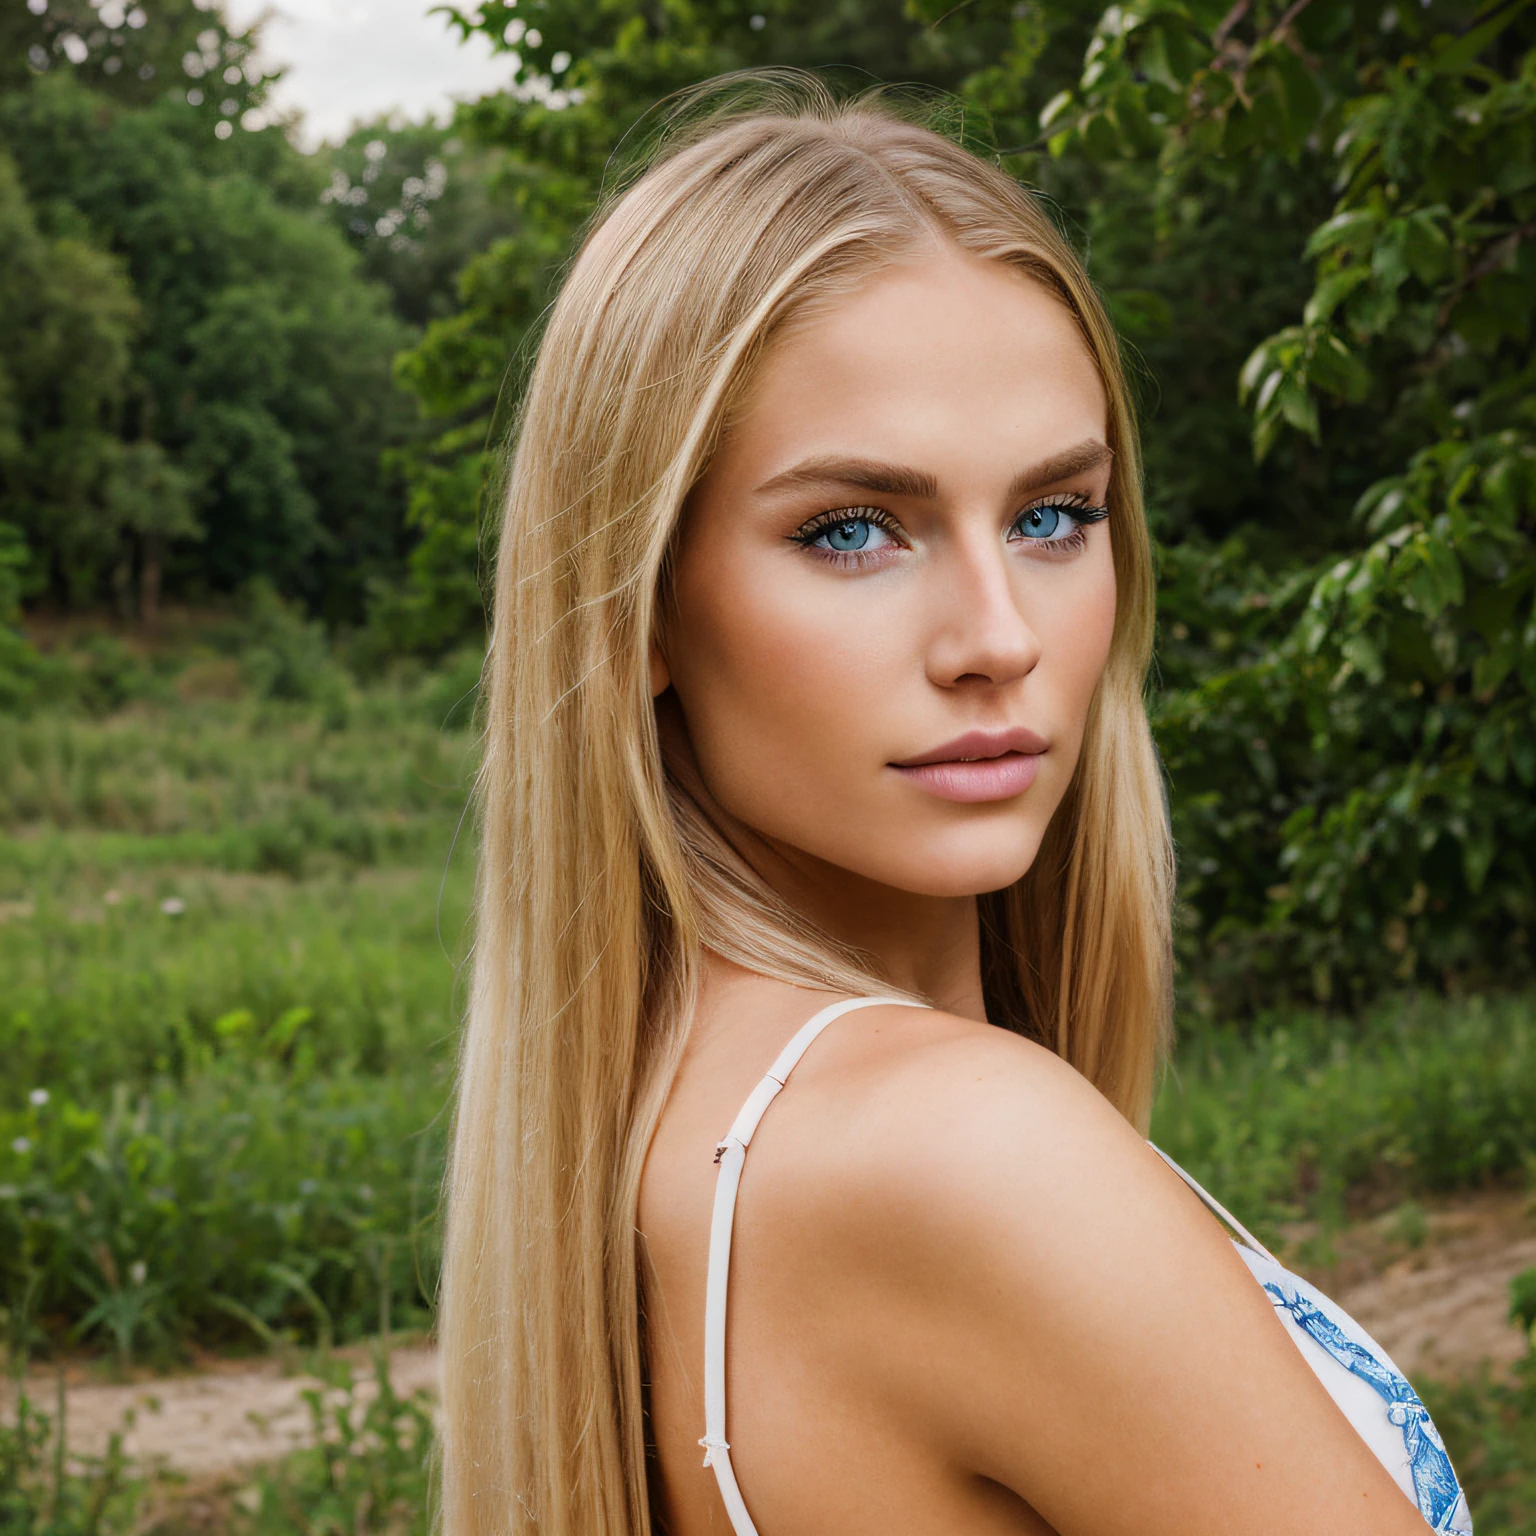 Hyperrealismus, junges blondes schönes Mädchen, langes blondes Haar, Blaue Augen, ca. 20-22 Jahre altes Modell, fotorealistisch, Realismus, Natur Hintergrund, Schauen und sich in die Kamera drehen, VORNE